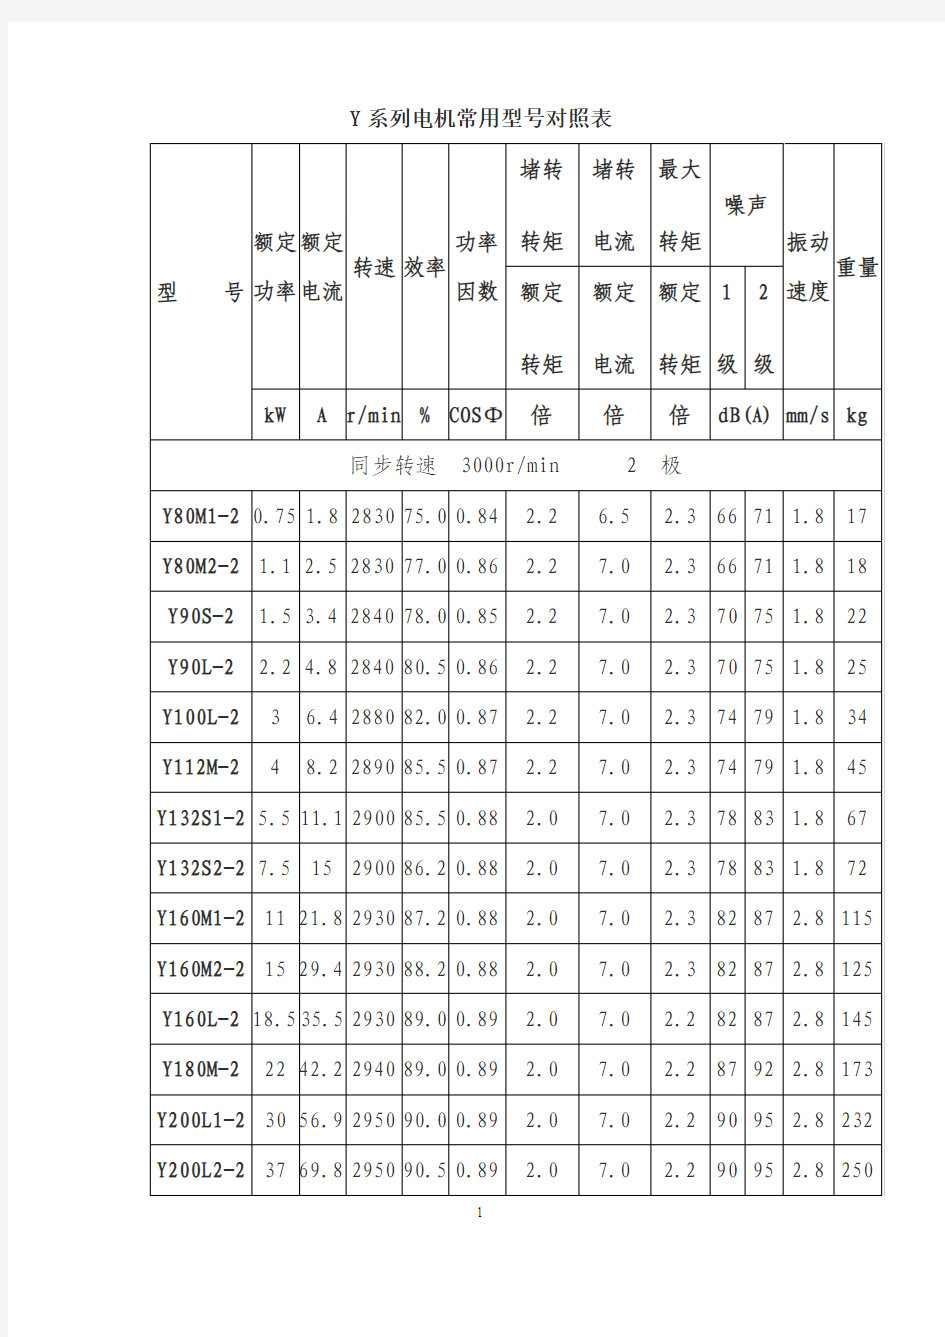 5、Y系列电机常用型号对照表